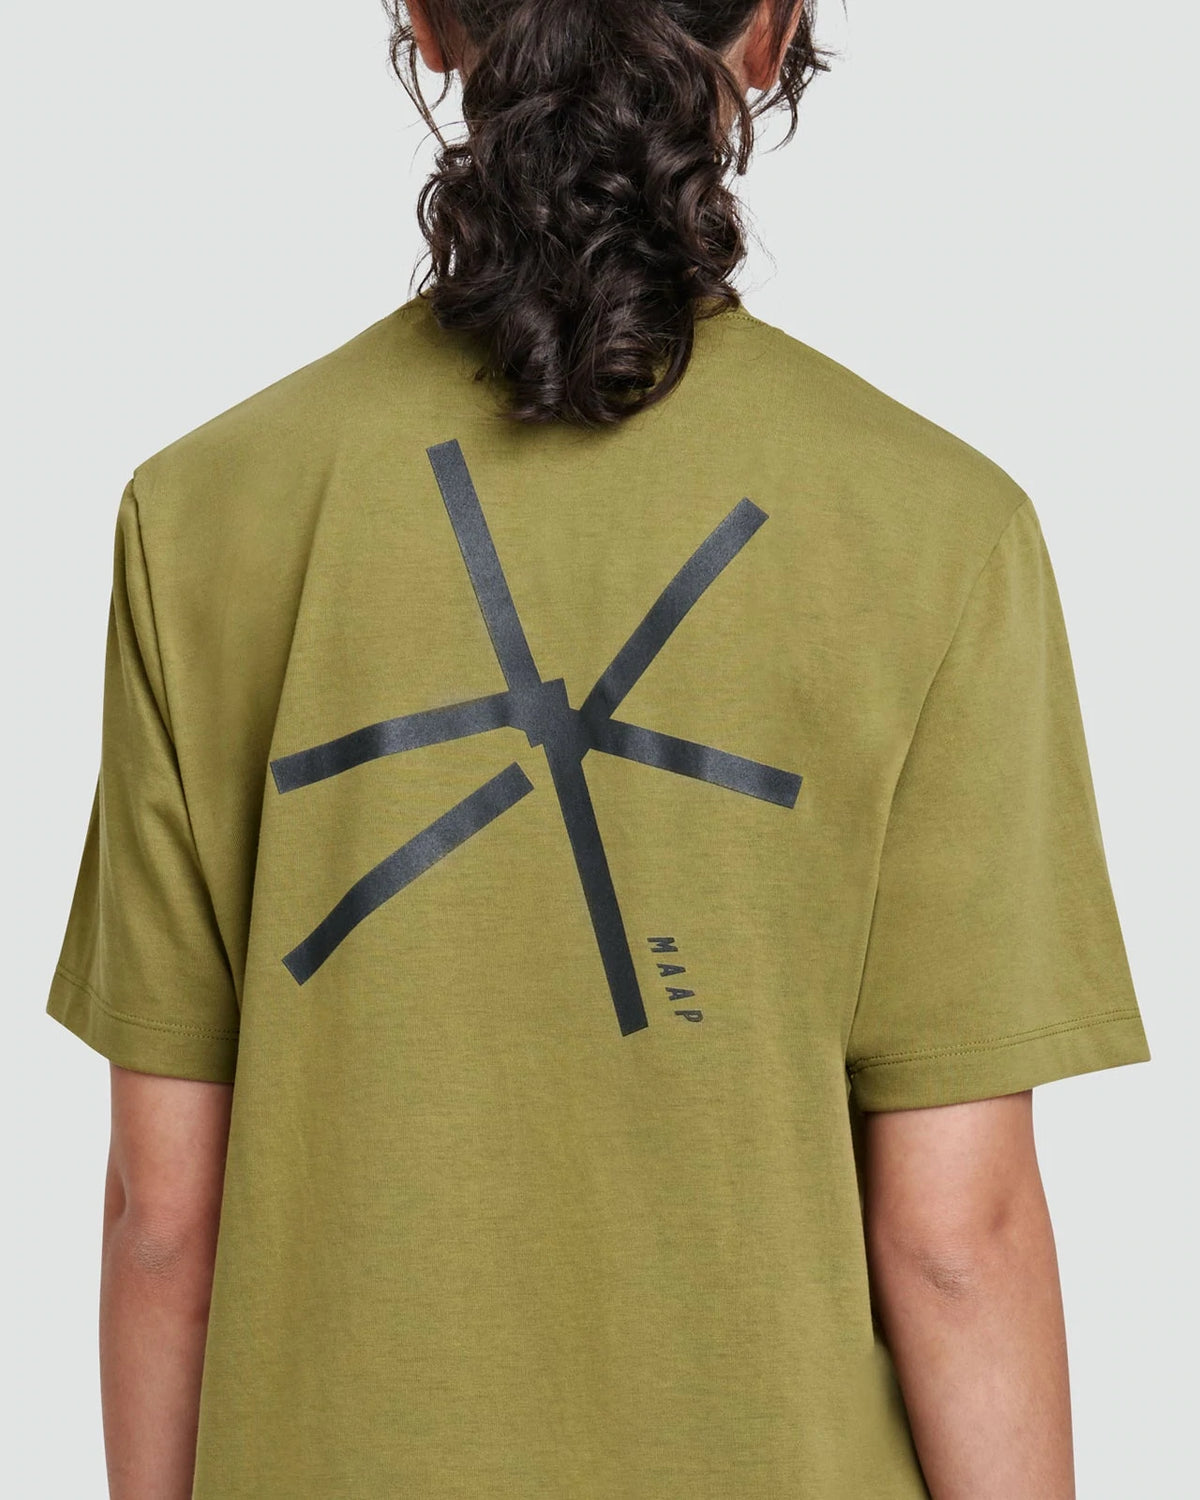 MAAP Sparks Kelp ユニセックス サイクルTシャツ | CYCLISM